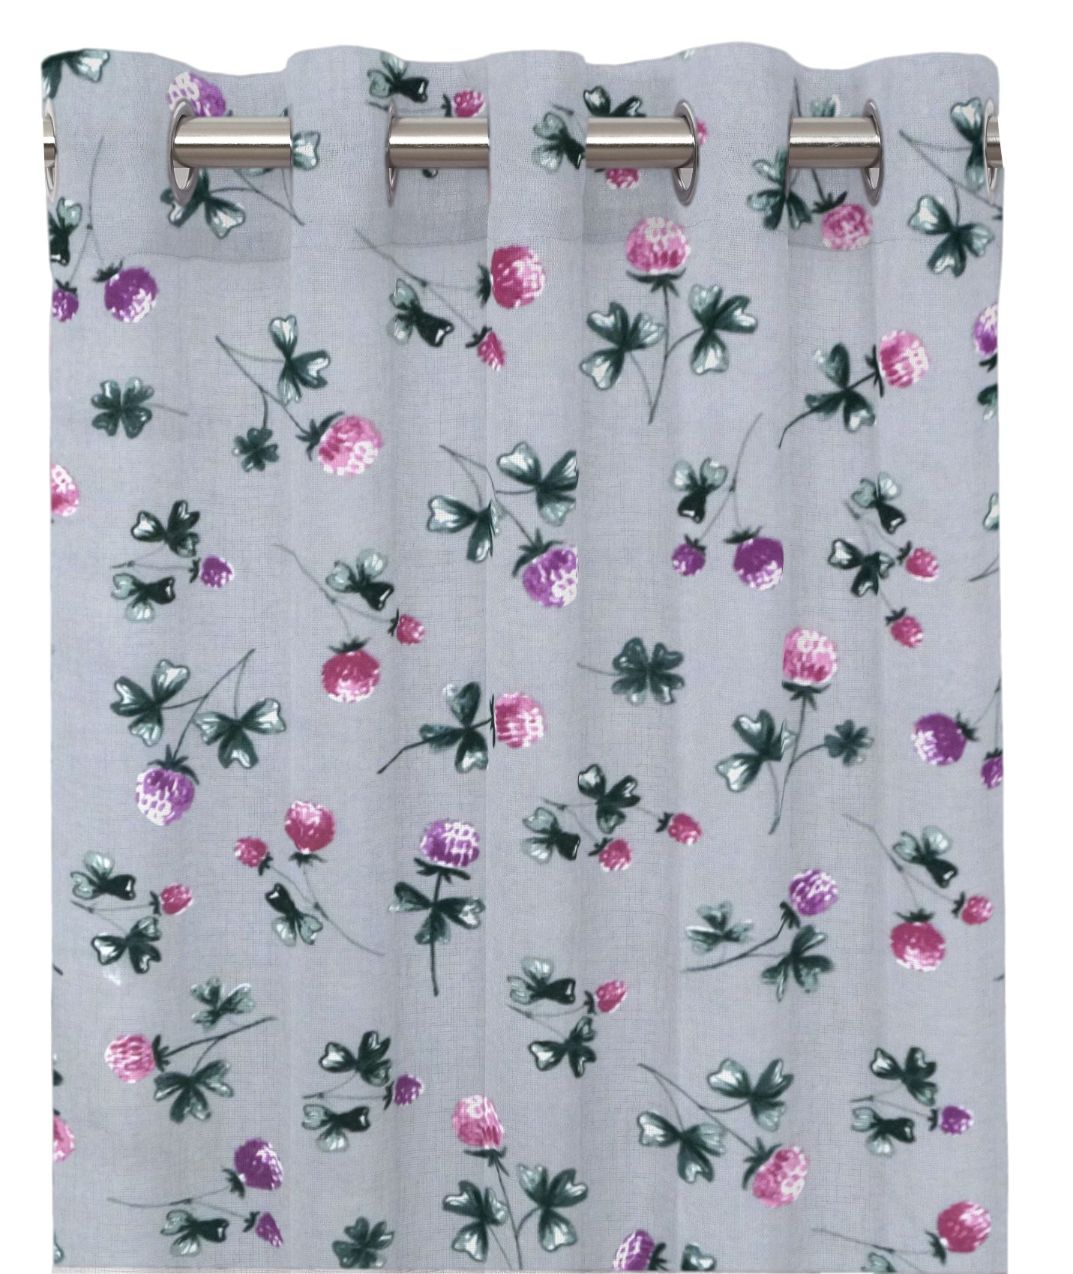 Klöver ett gardinset med öljetter från Redlunds textil. Färg: Grå botten med rosa och lila klöverblommor.